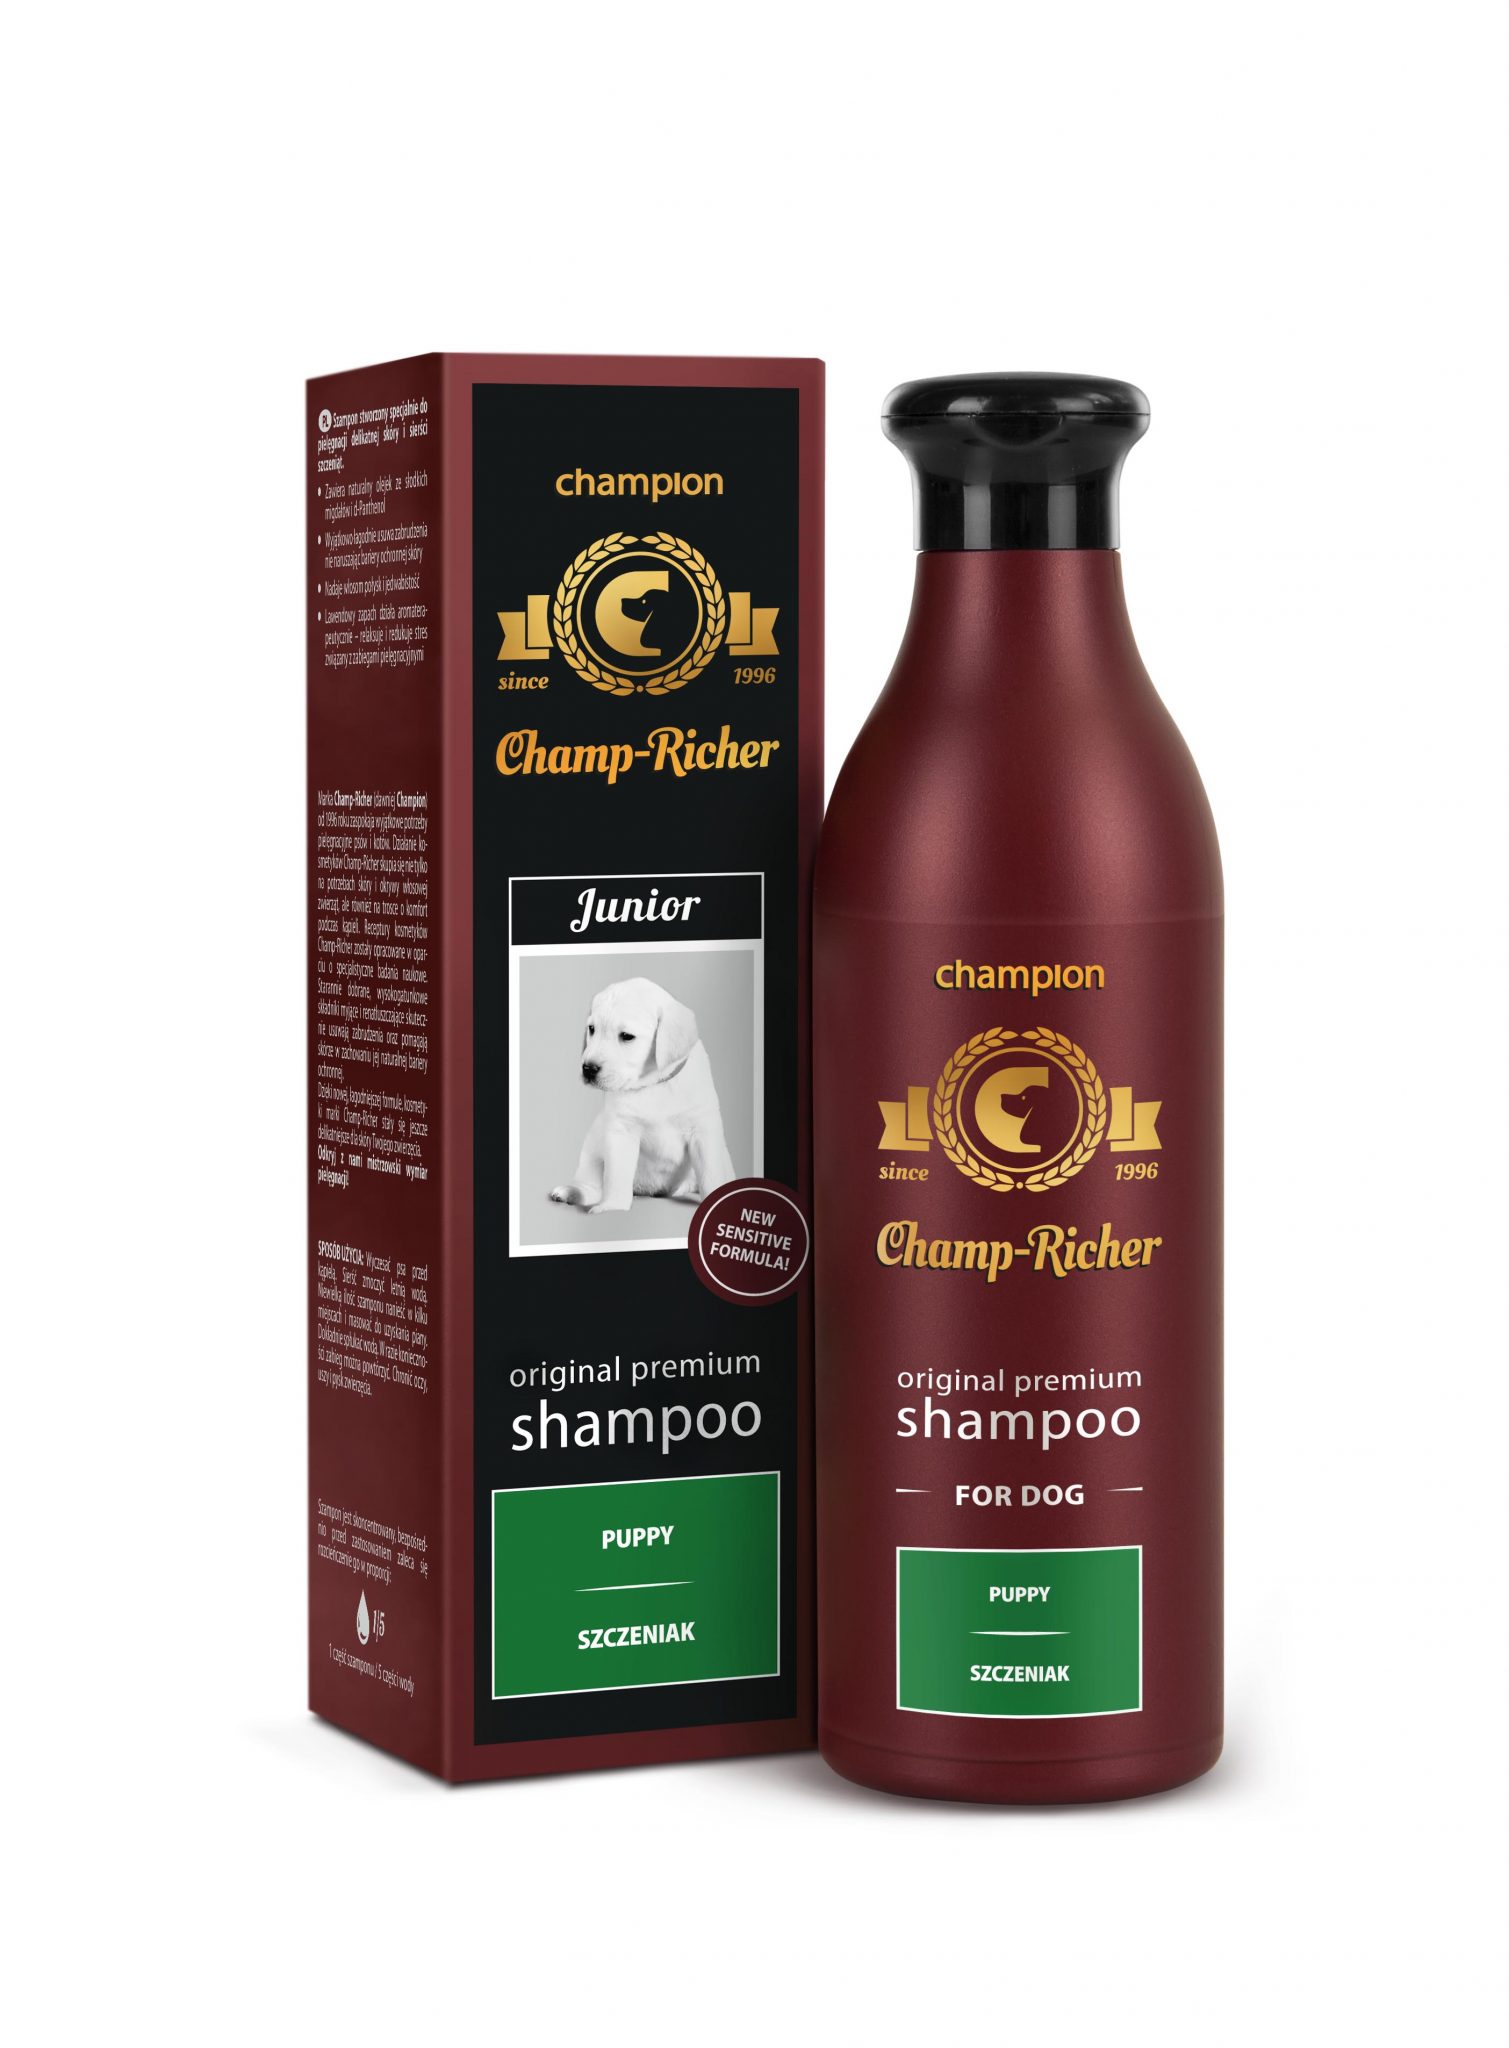 Champ-Richer profesjonalny szampon szczeniak